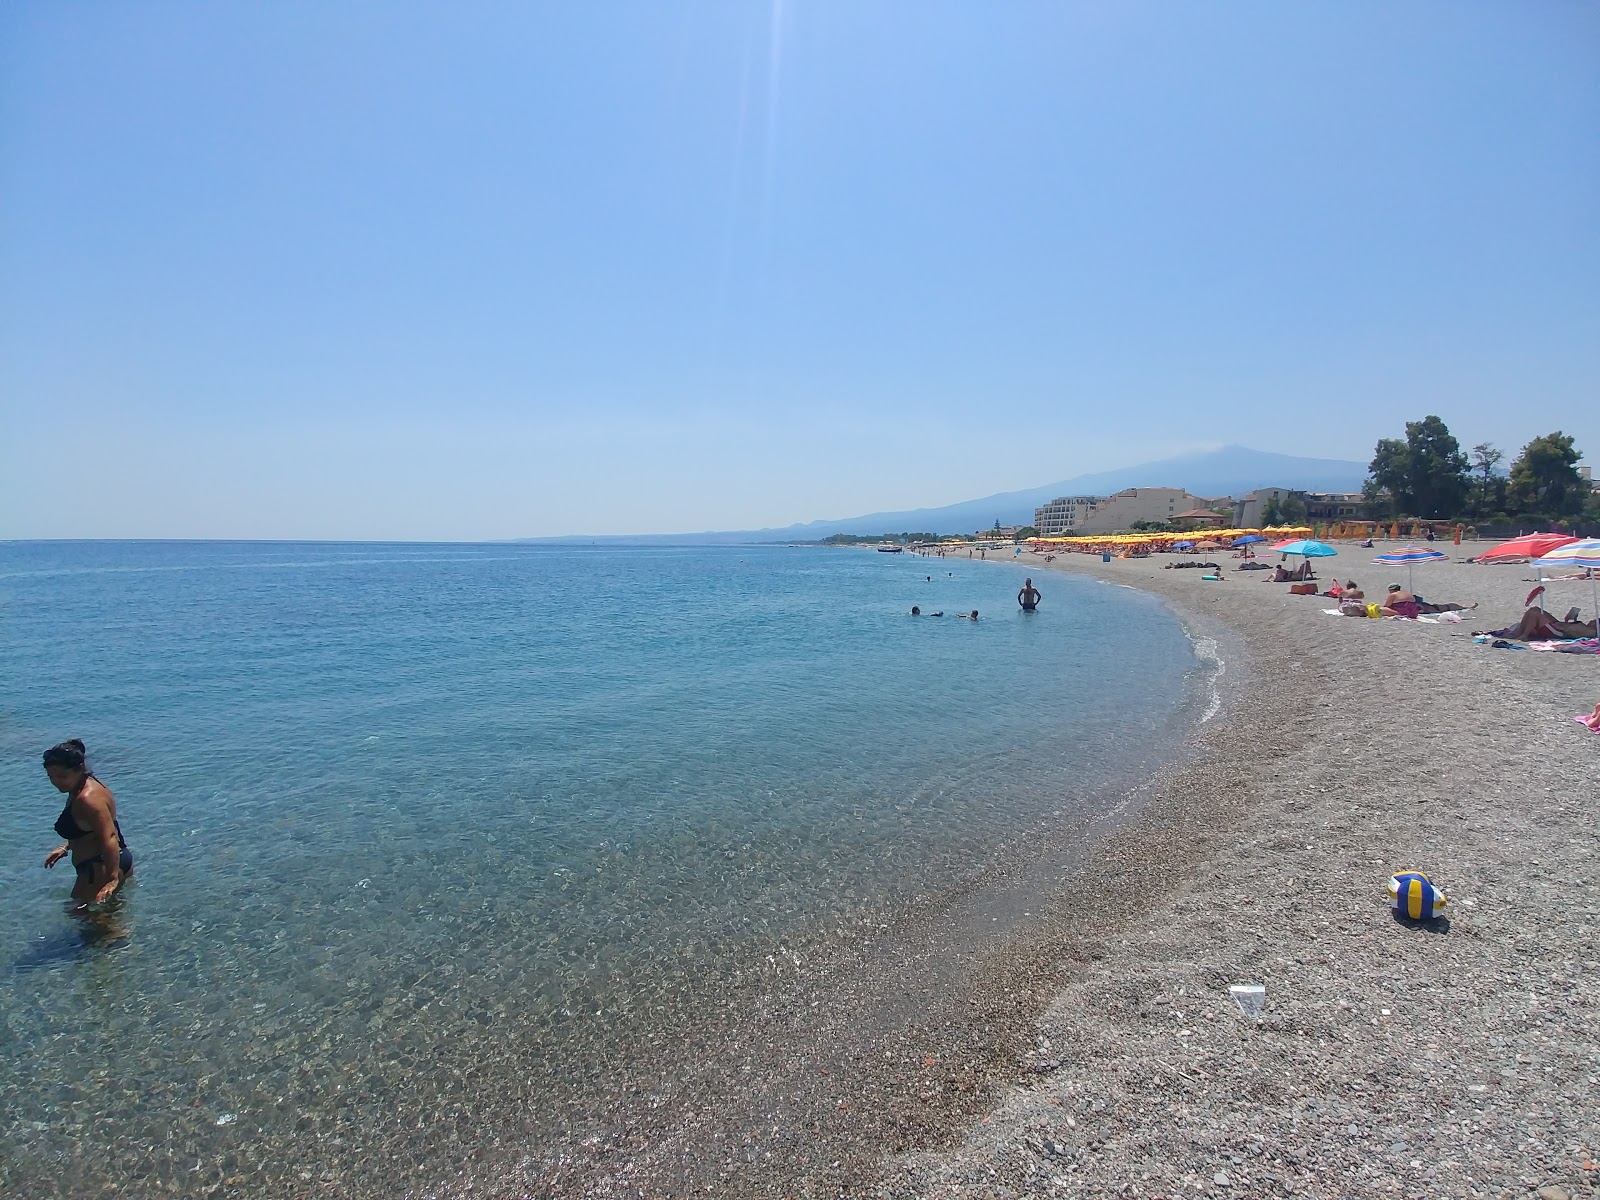 Recanati beach II'in fotoğrafı gri ince çakıl taş yüzey ile